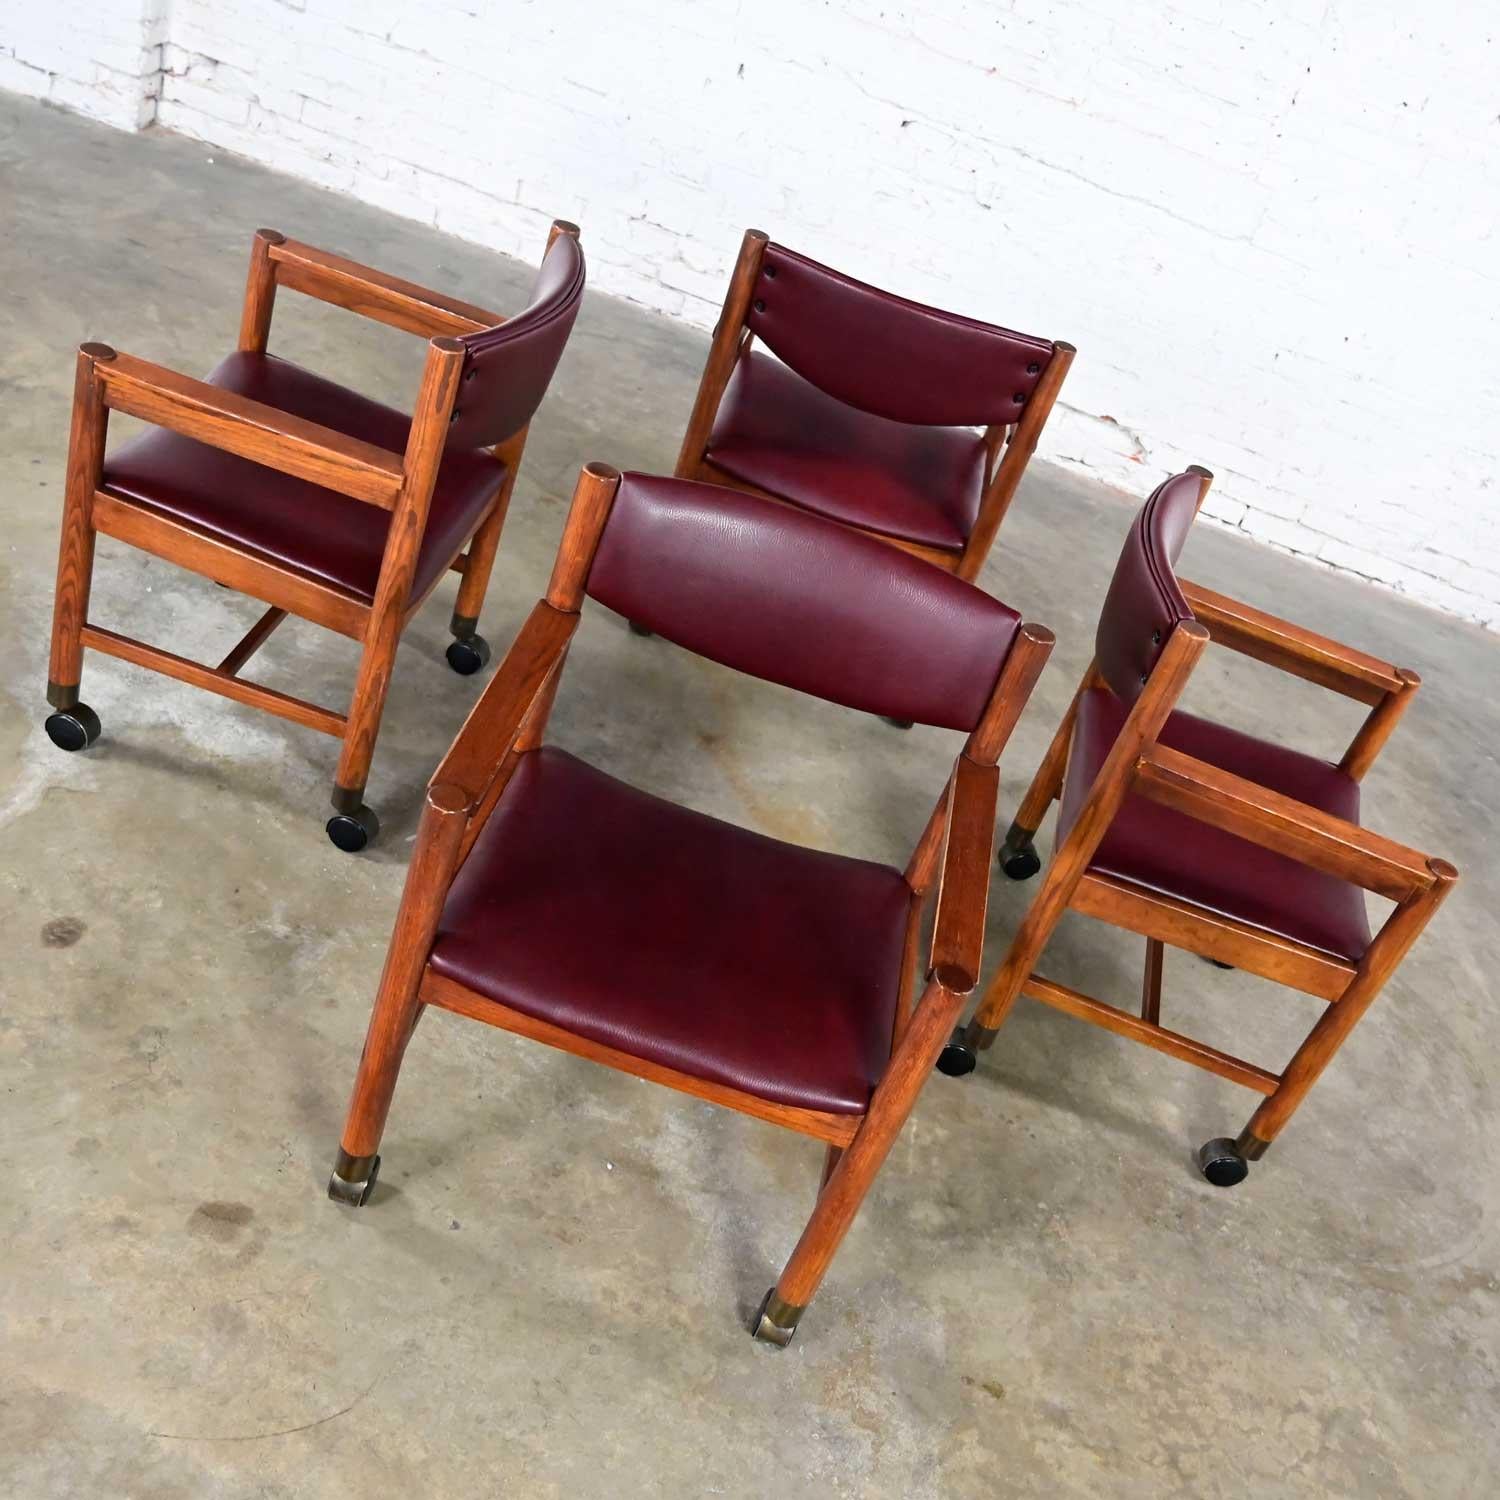 Merveilleuses chaises de jeu ou de salle à manger roulantes de style Mid-Century Modern à moderne, composées de cadres en chêne, de sièges et de dossiers en vinyle marron, de sabots en laiton et de roulettes. Magnifique état, en gardant à l'esprit